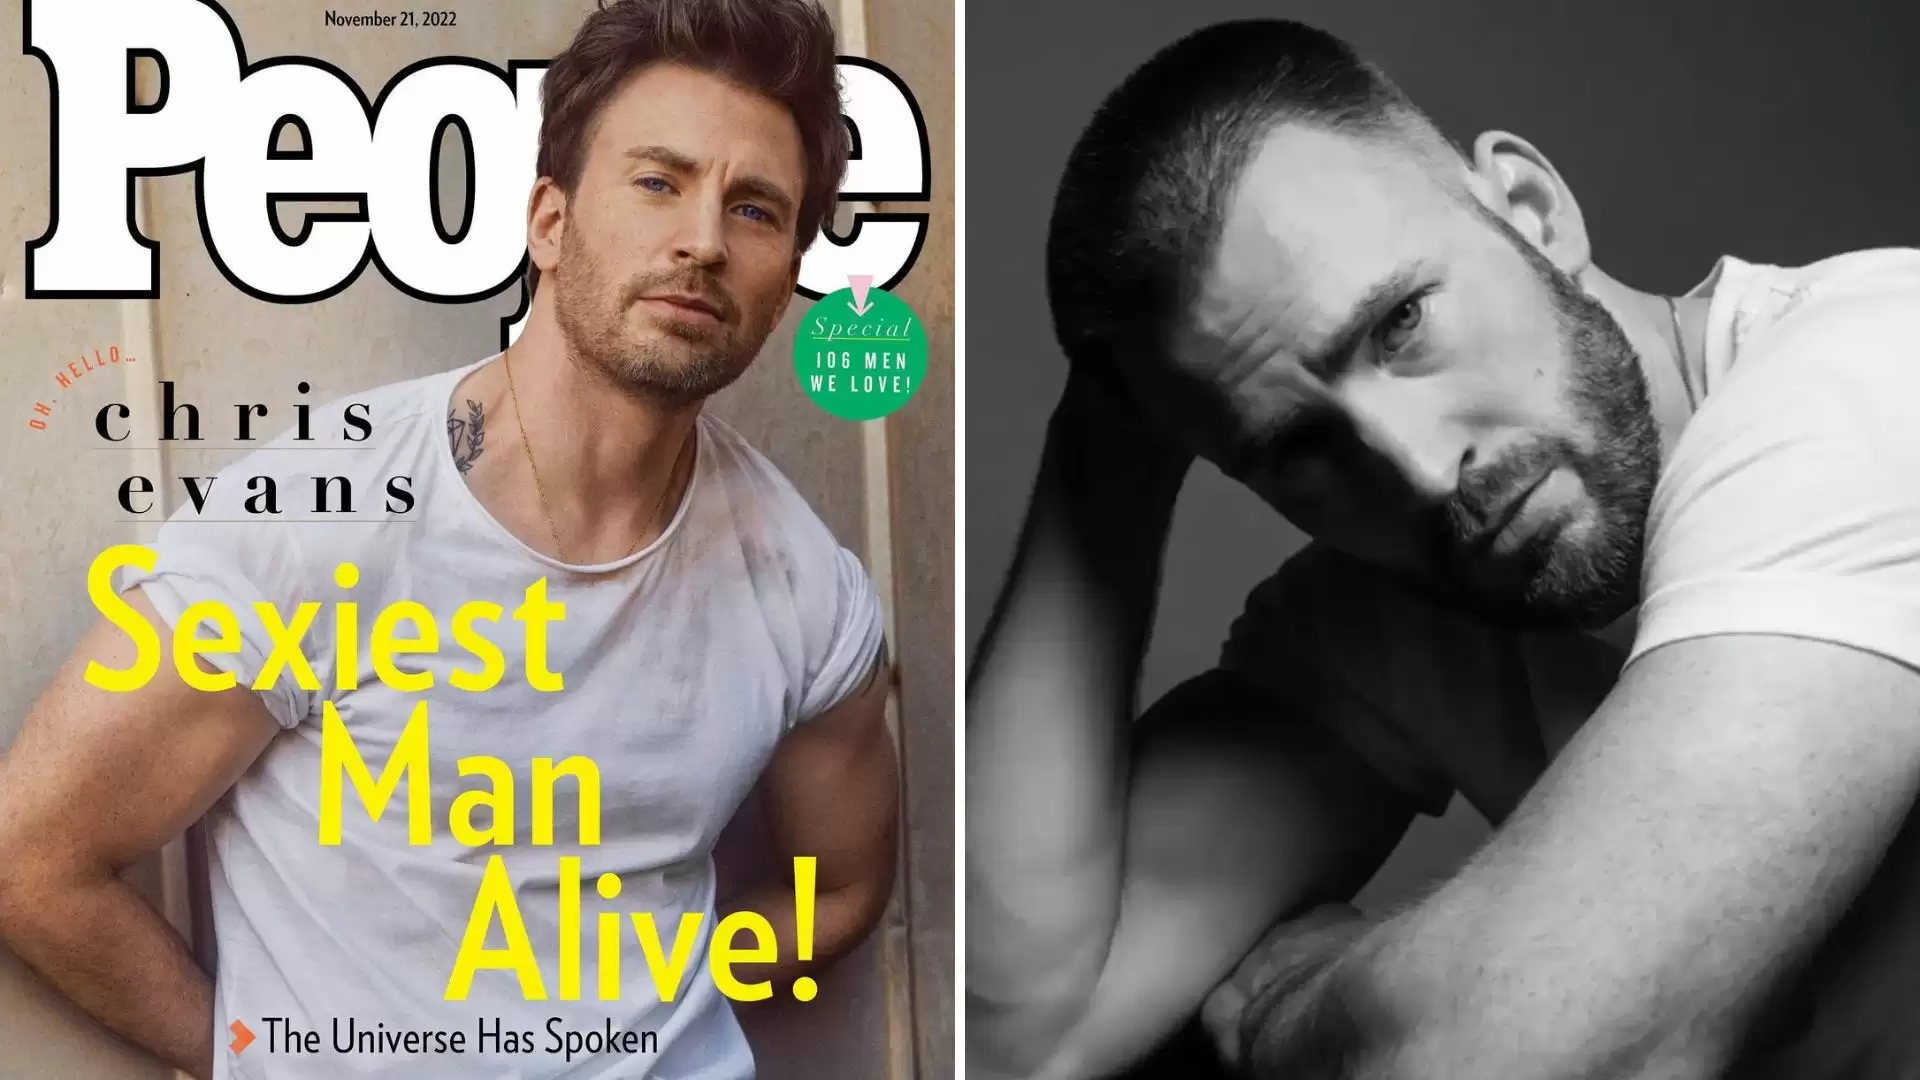 Ator de «Avengers» eleito homem mais sexy do mundo em 2014 - TVI